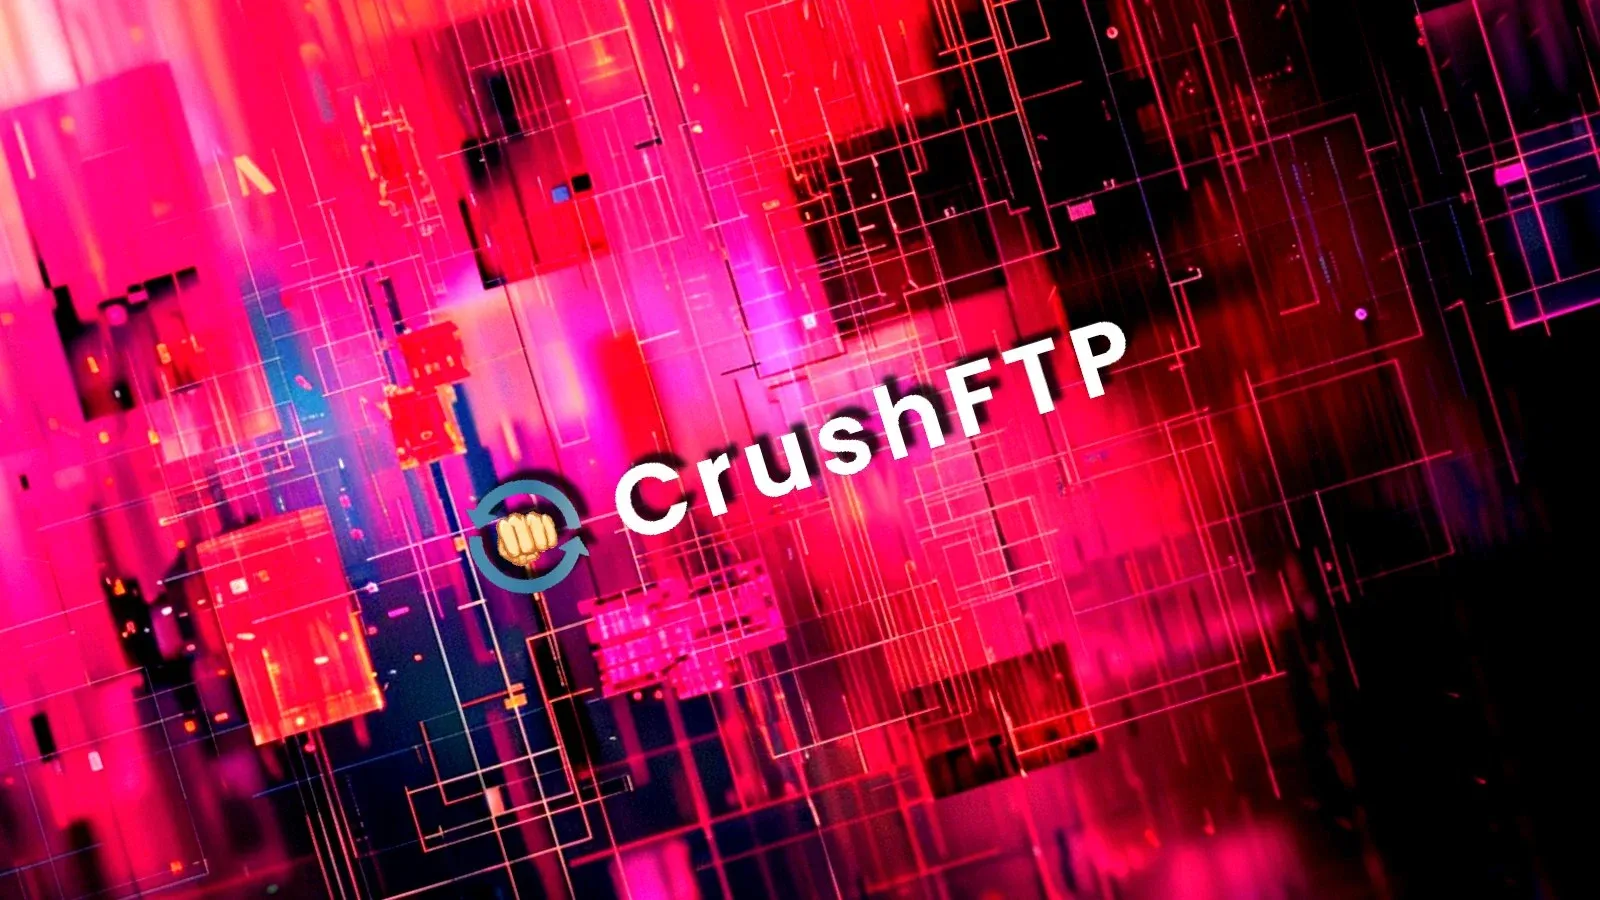 Hơn 1.400 máy chủ CrushFTP có thể bị tấn công do lỗi bảo mật